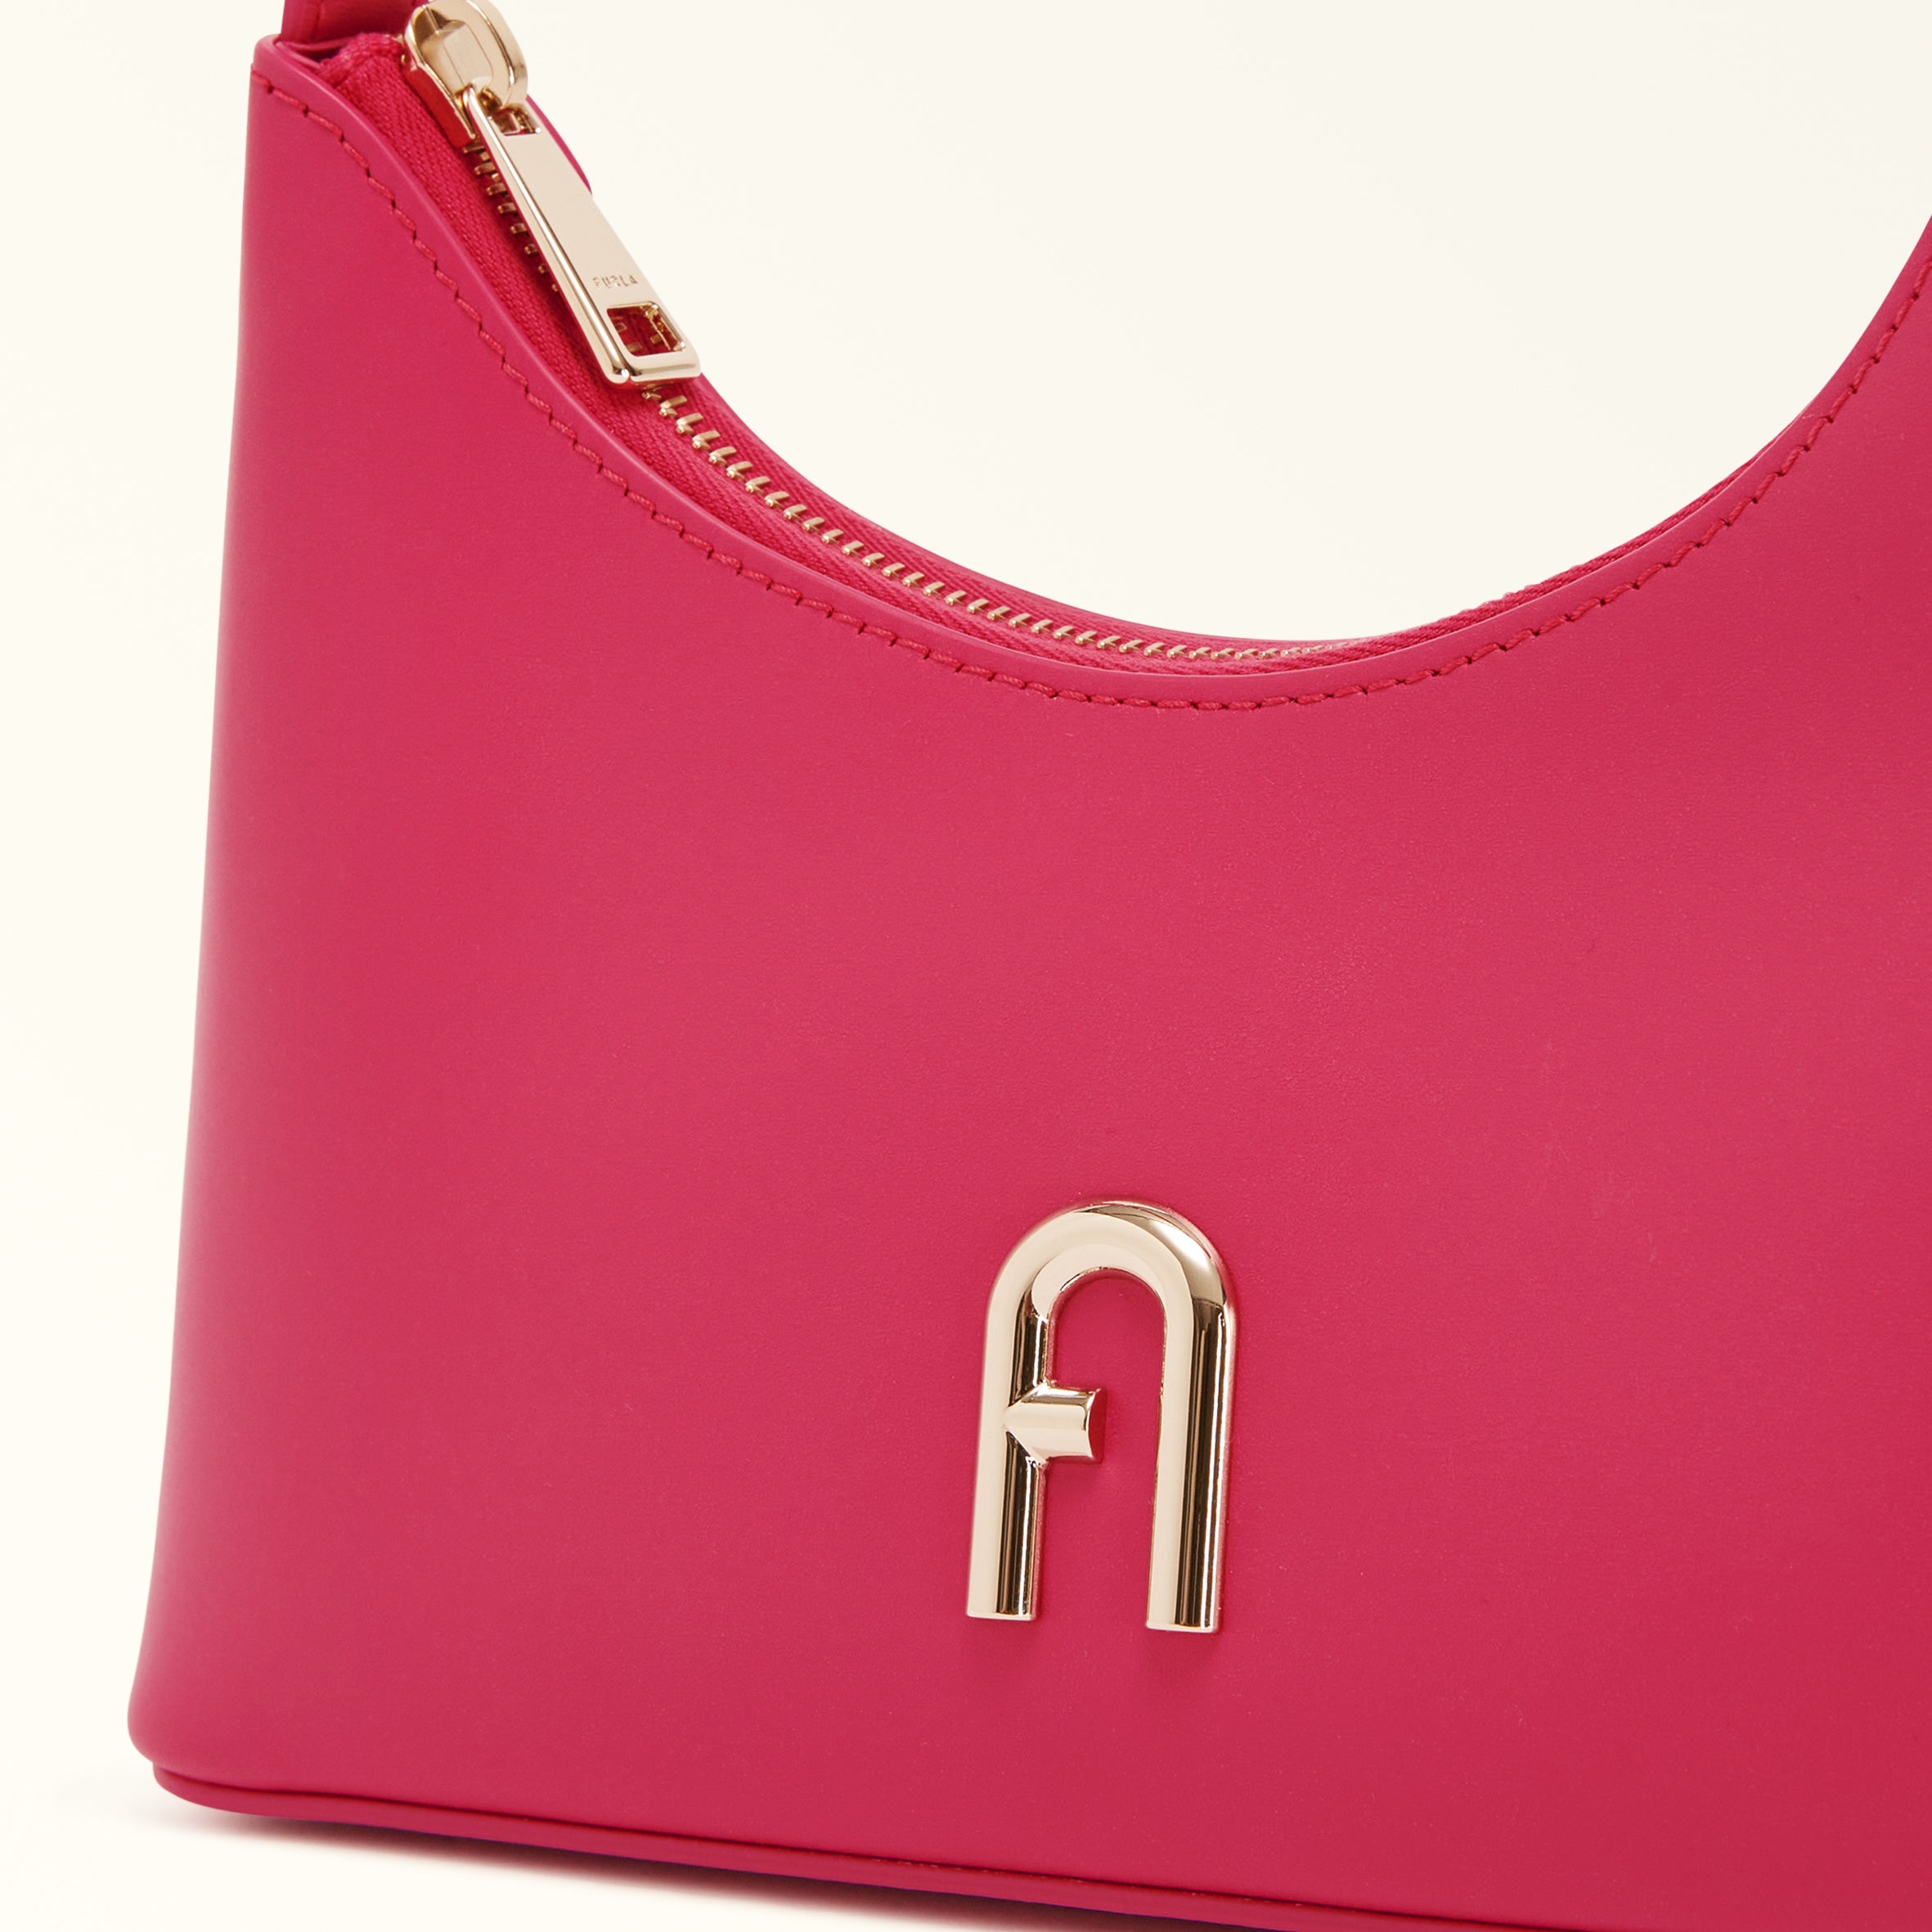 Furla Diamante Shoulder Bag Pop Pink Mini WB00863AX07332504S1007